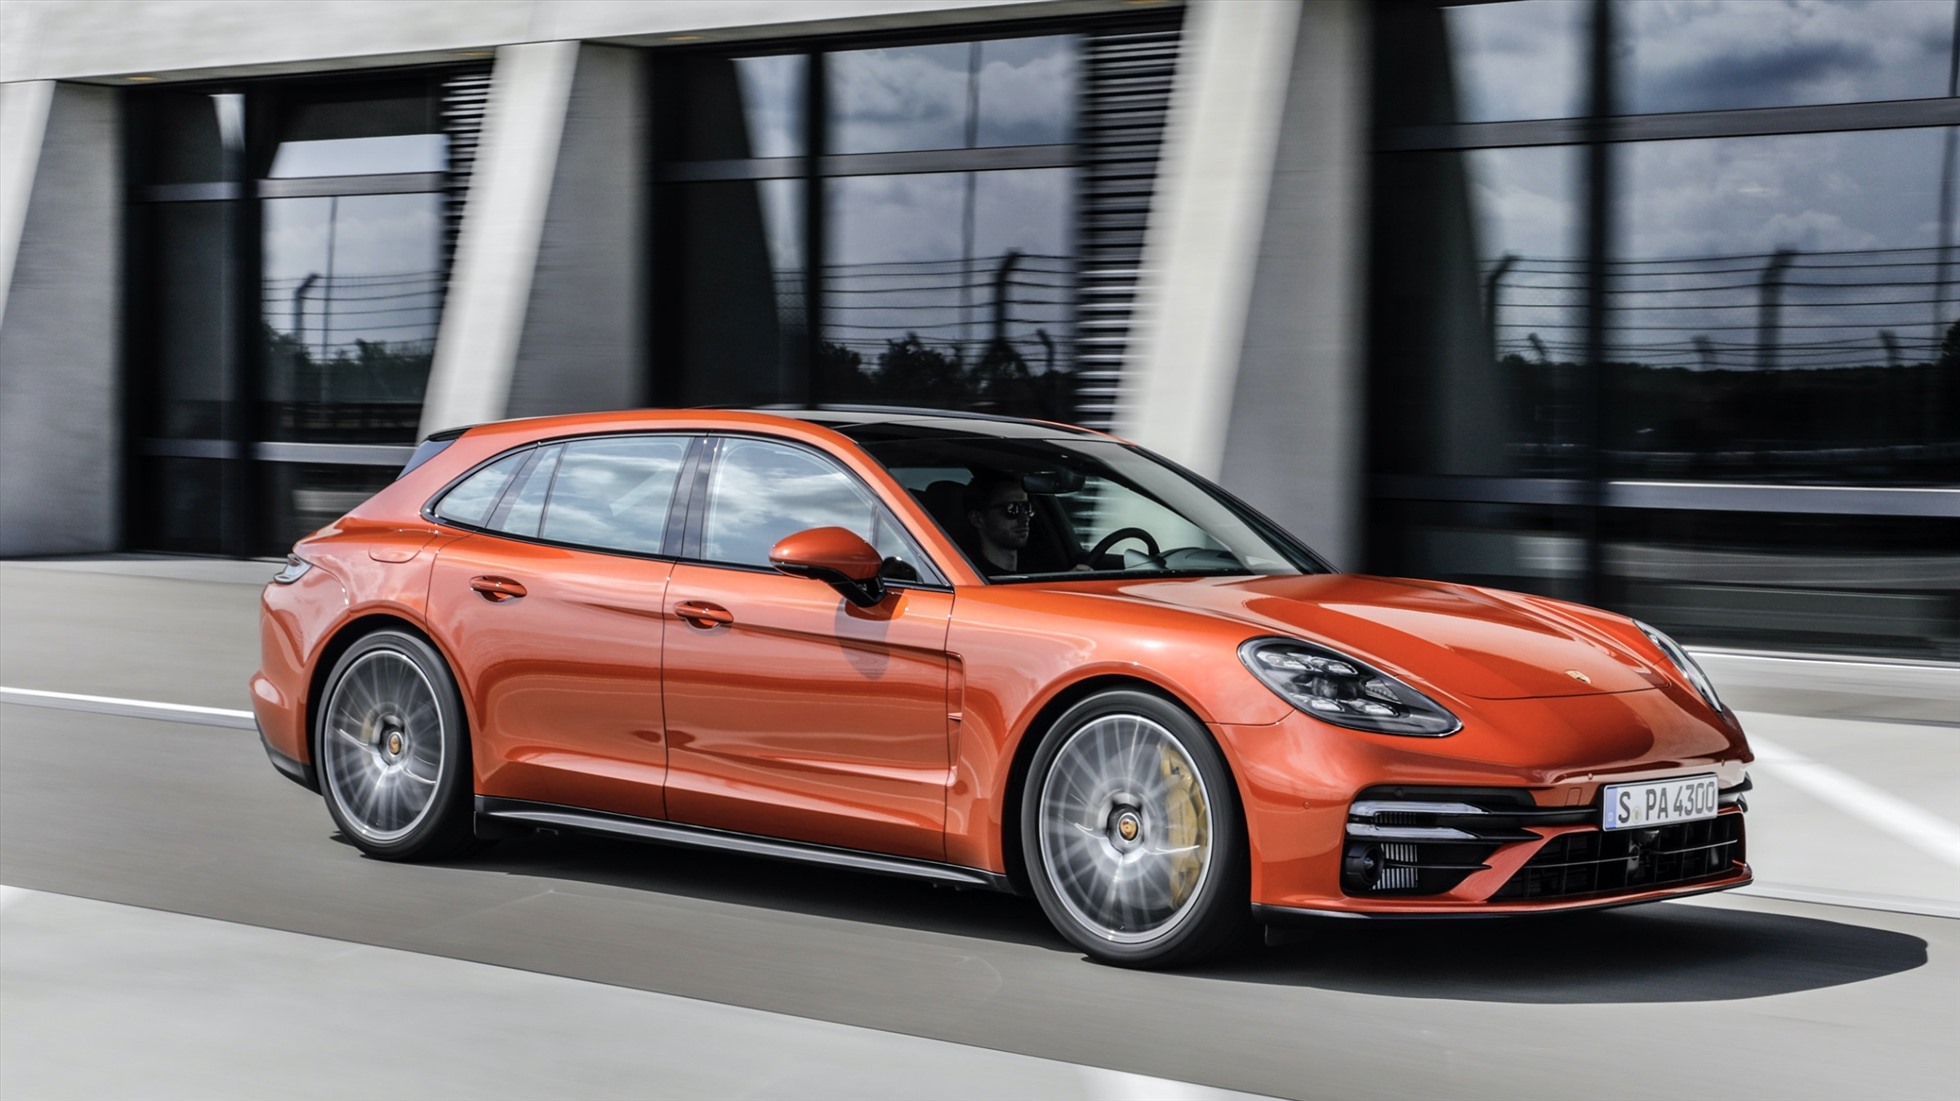 Choáng với giá của siêu xe Porsche bị lật ngửa trên cao tốc - Ảnh 2.